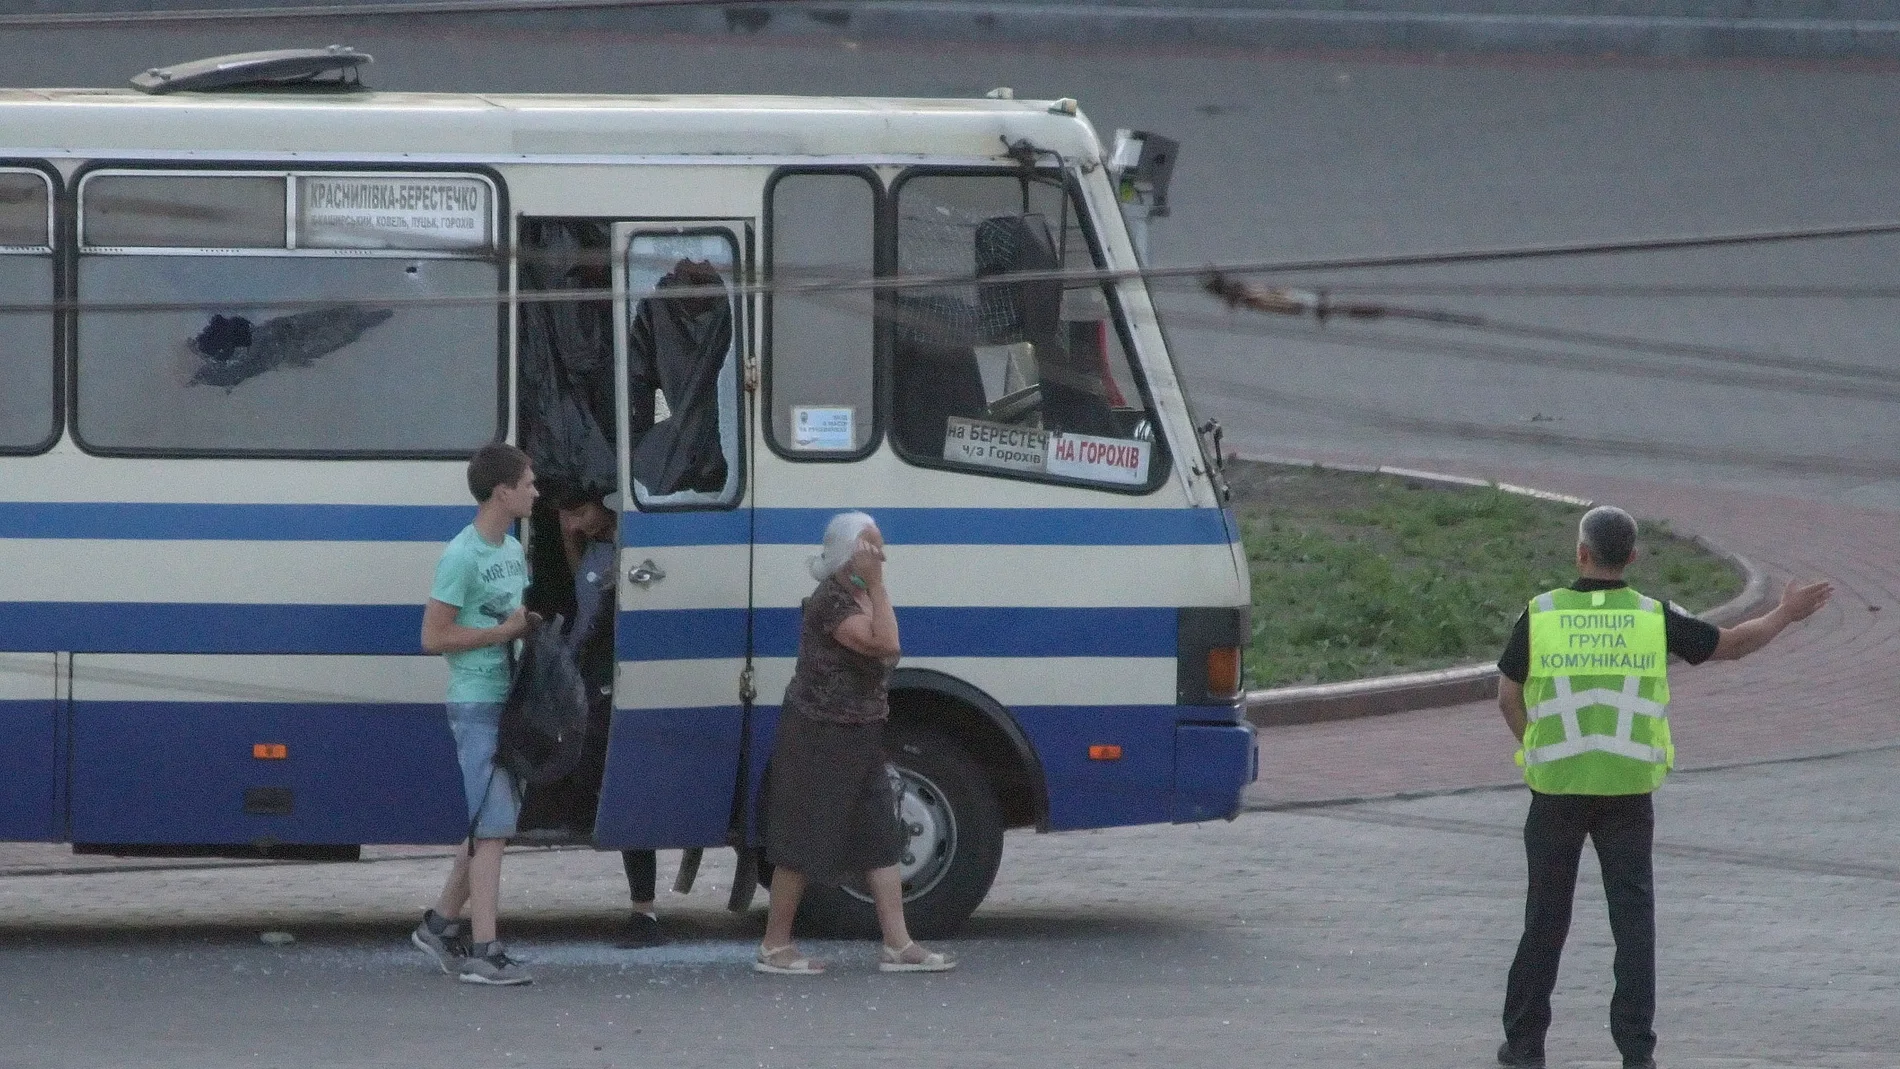 Los secuestrados salen del autobús en la ciudad de Lutsk en Ucrania